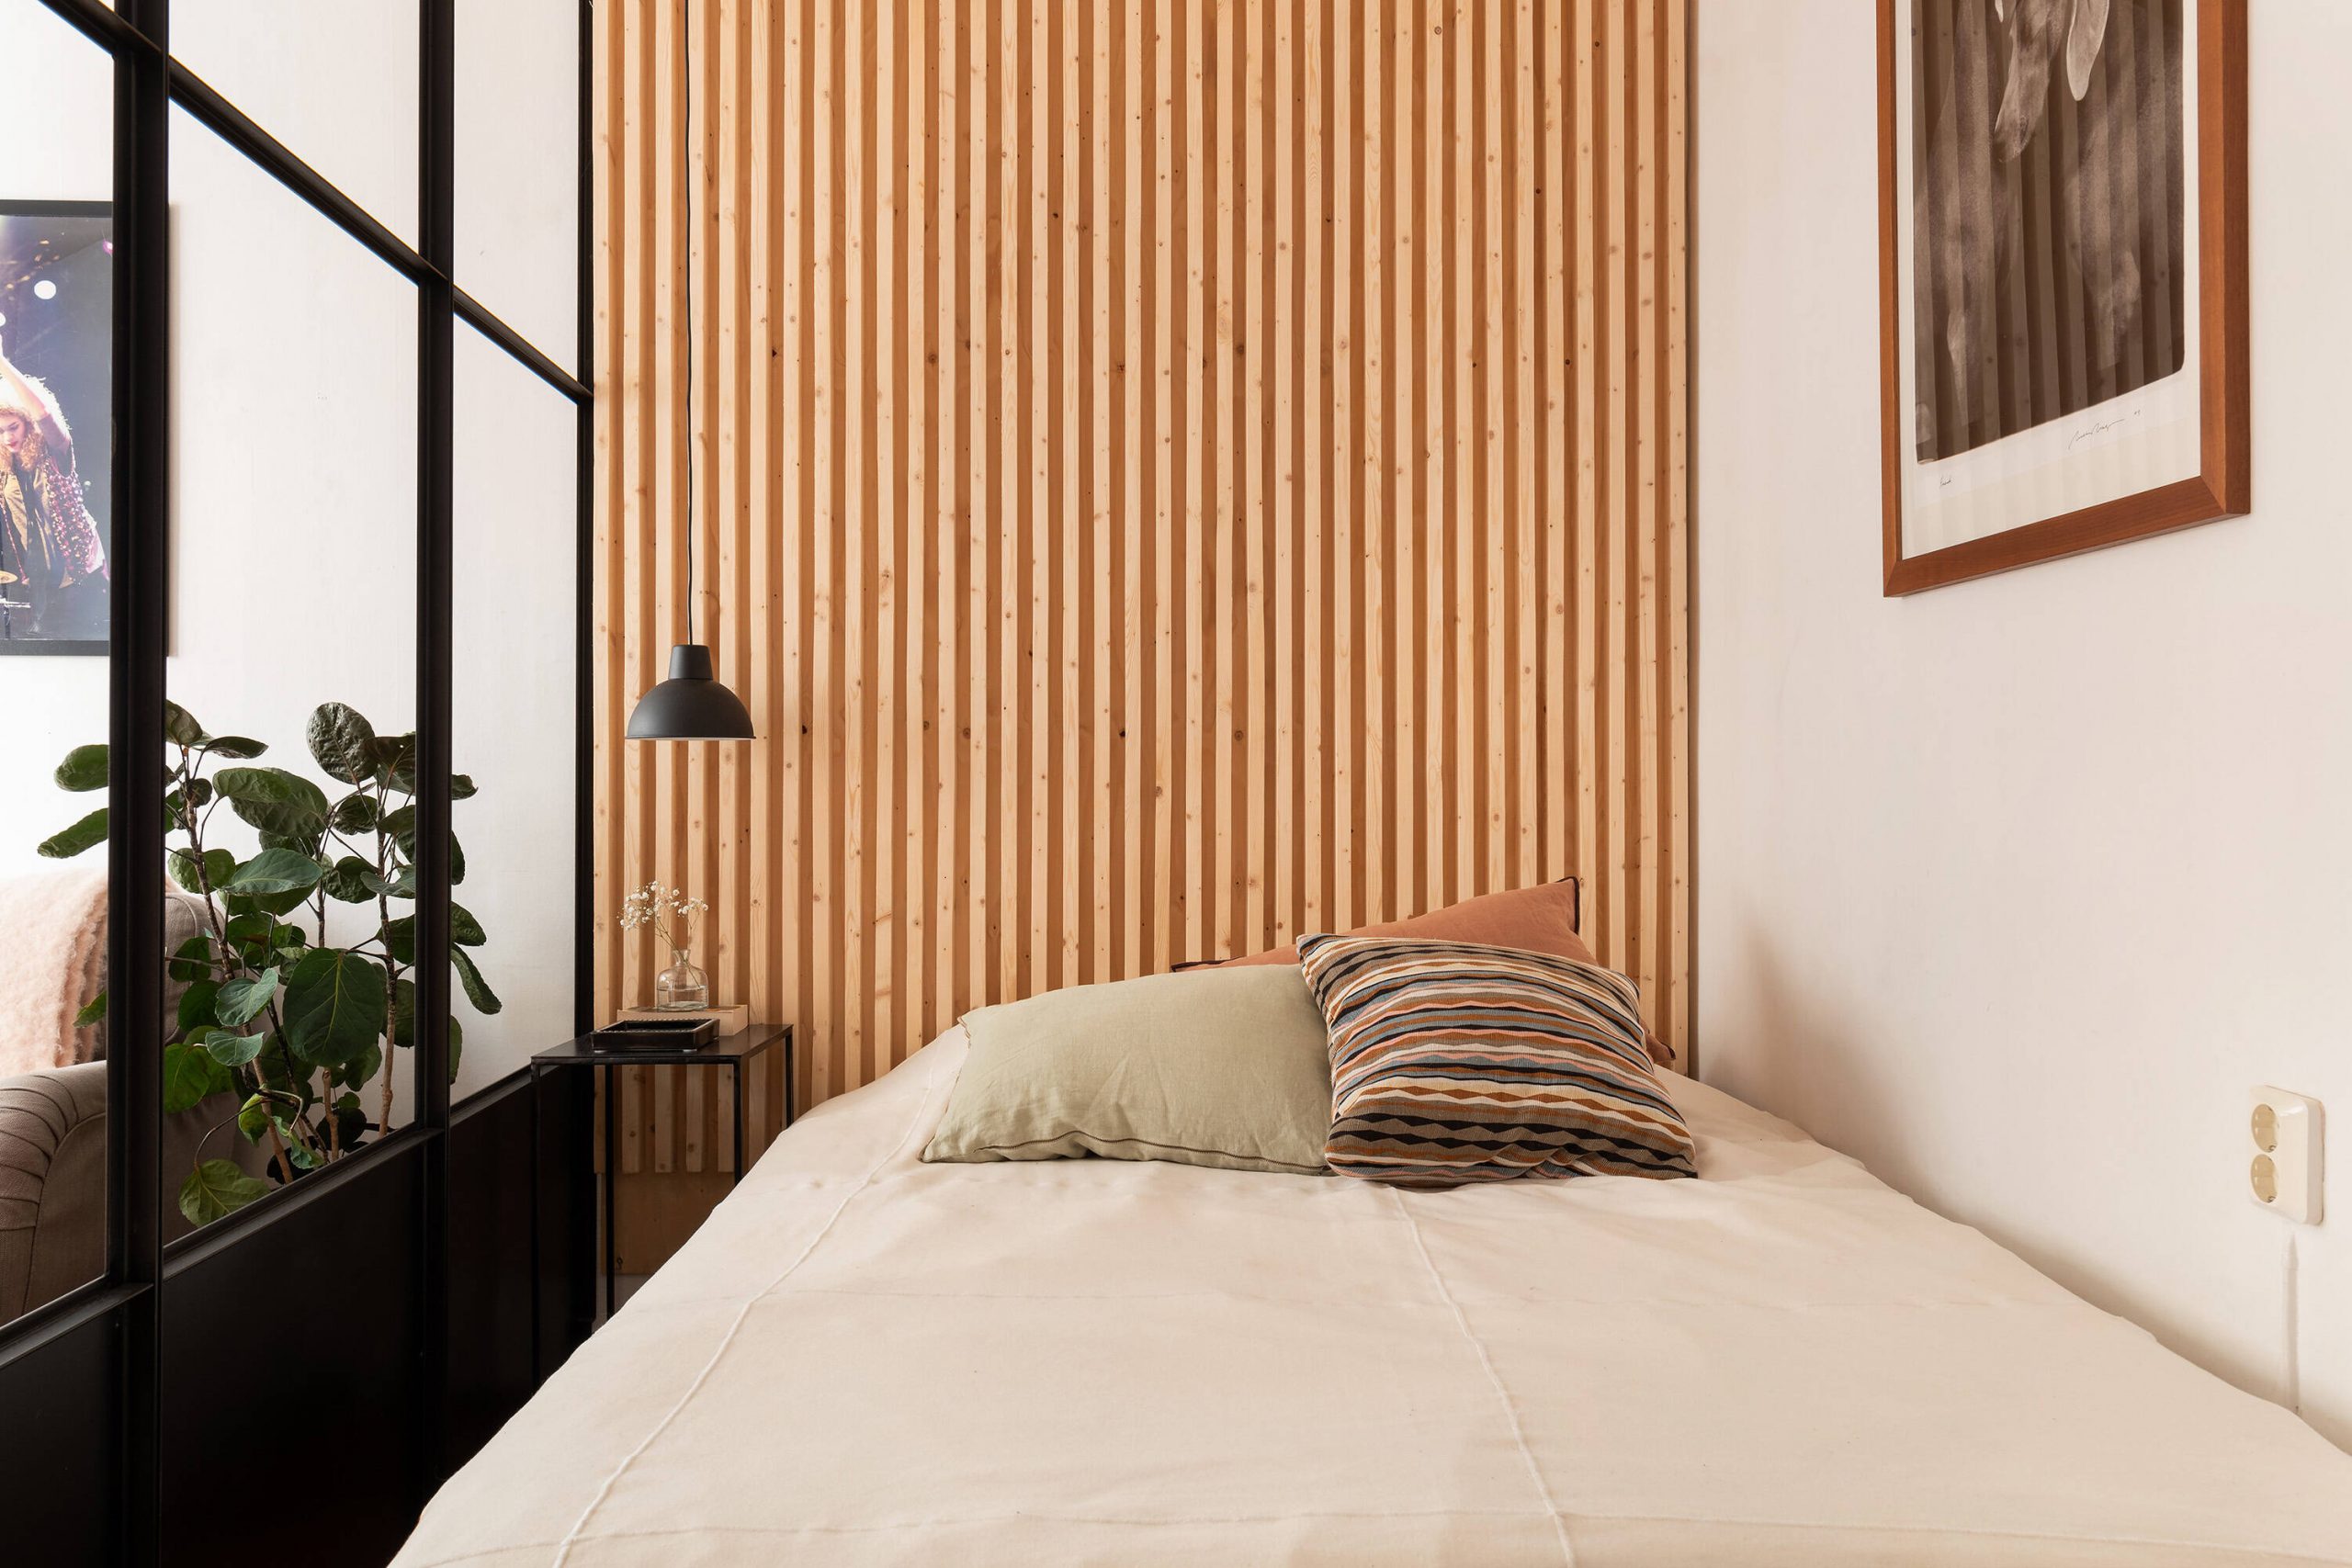 chambre tête de lit décoration tasseau de bois